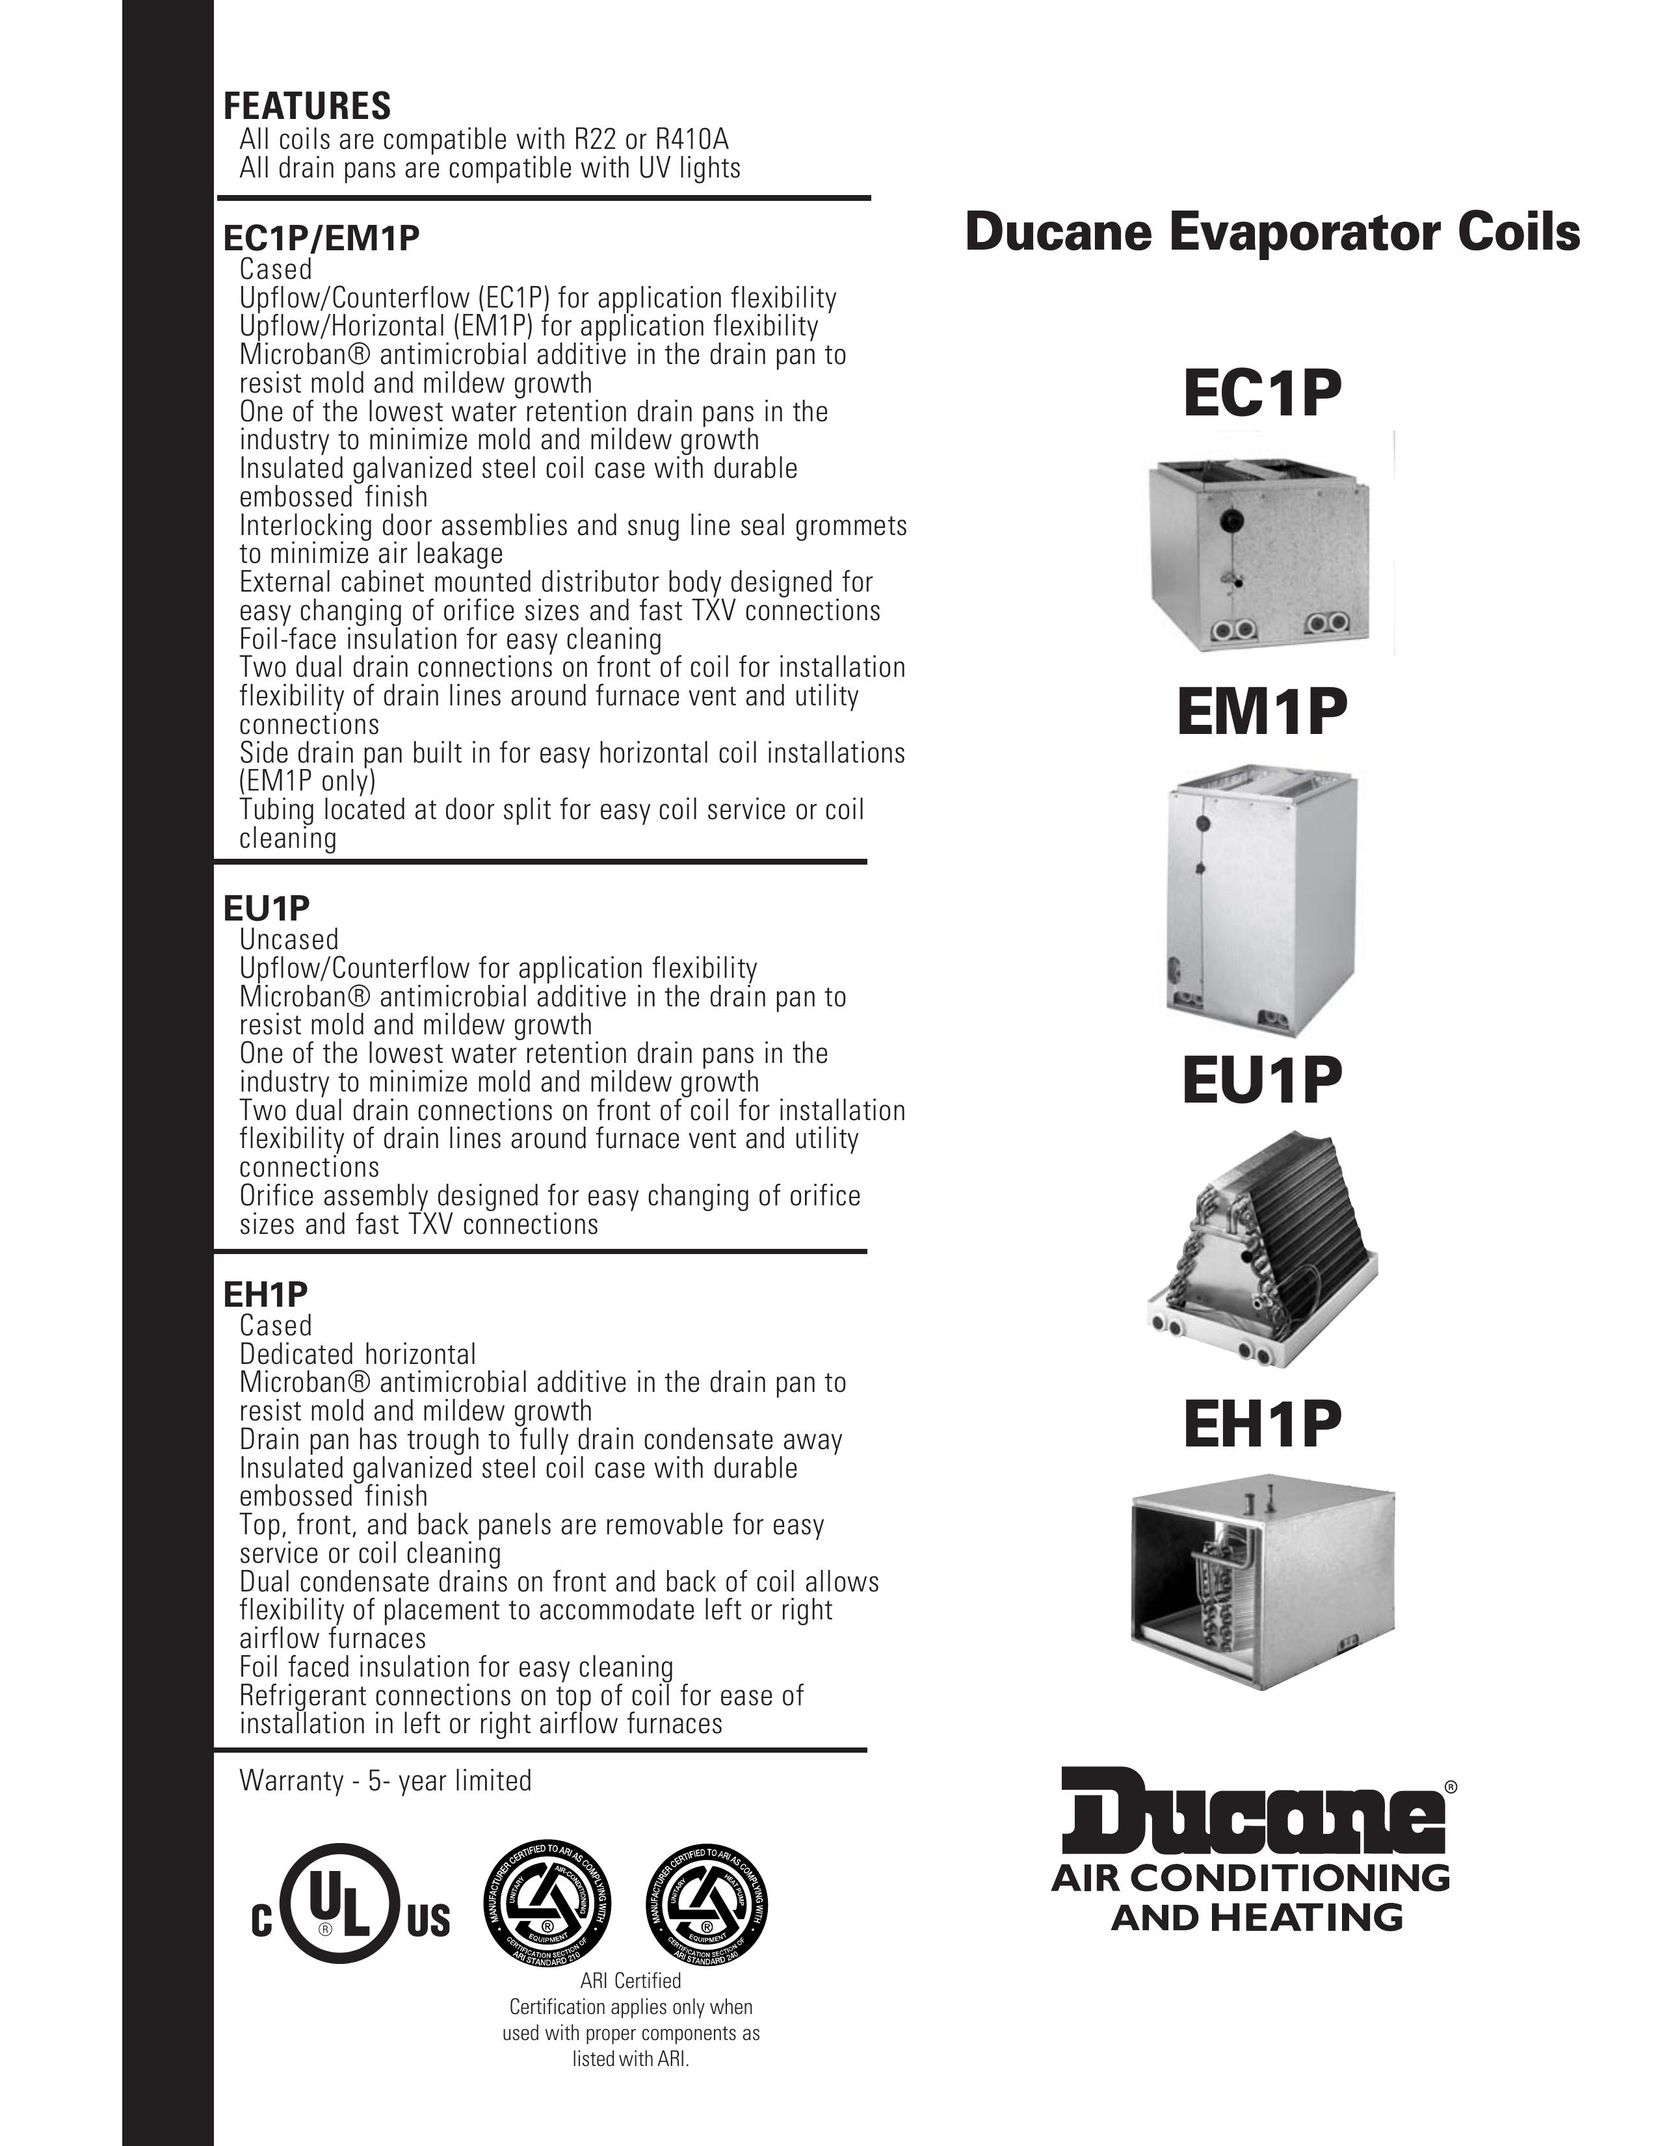 Ducane (HVAC) EH1P Air Conditioner User Manual